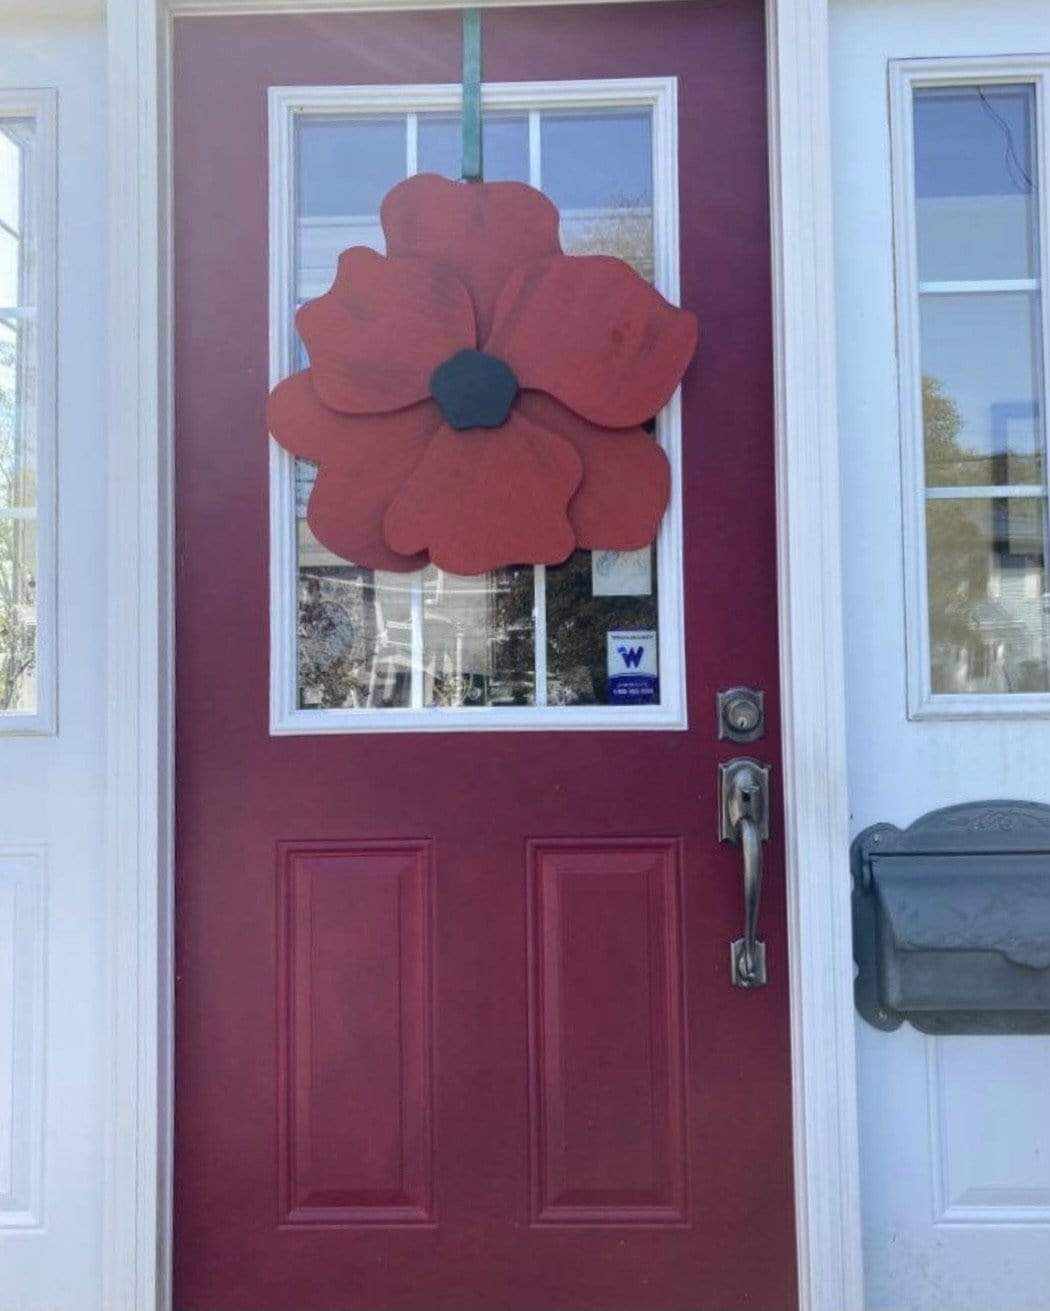  Atlantic Wood N Wares  Home & Garden>Home Décor>Fall décor>door hangings Handcrafted Wooden Flower Door Decor: Anemone Inspired